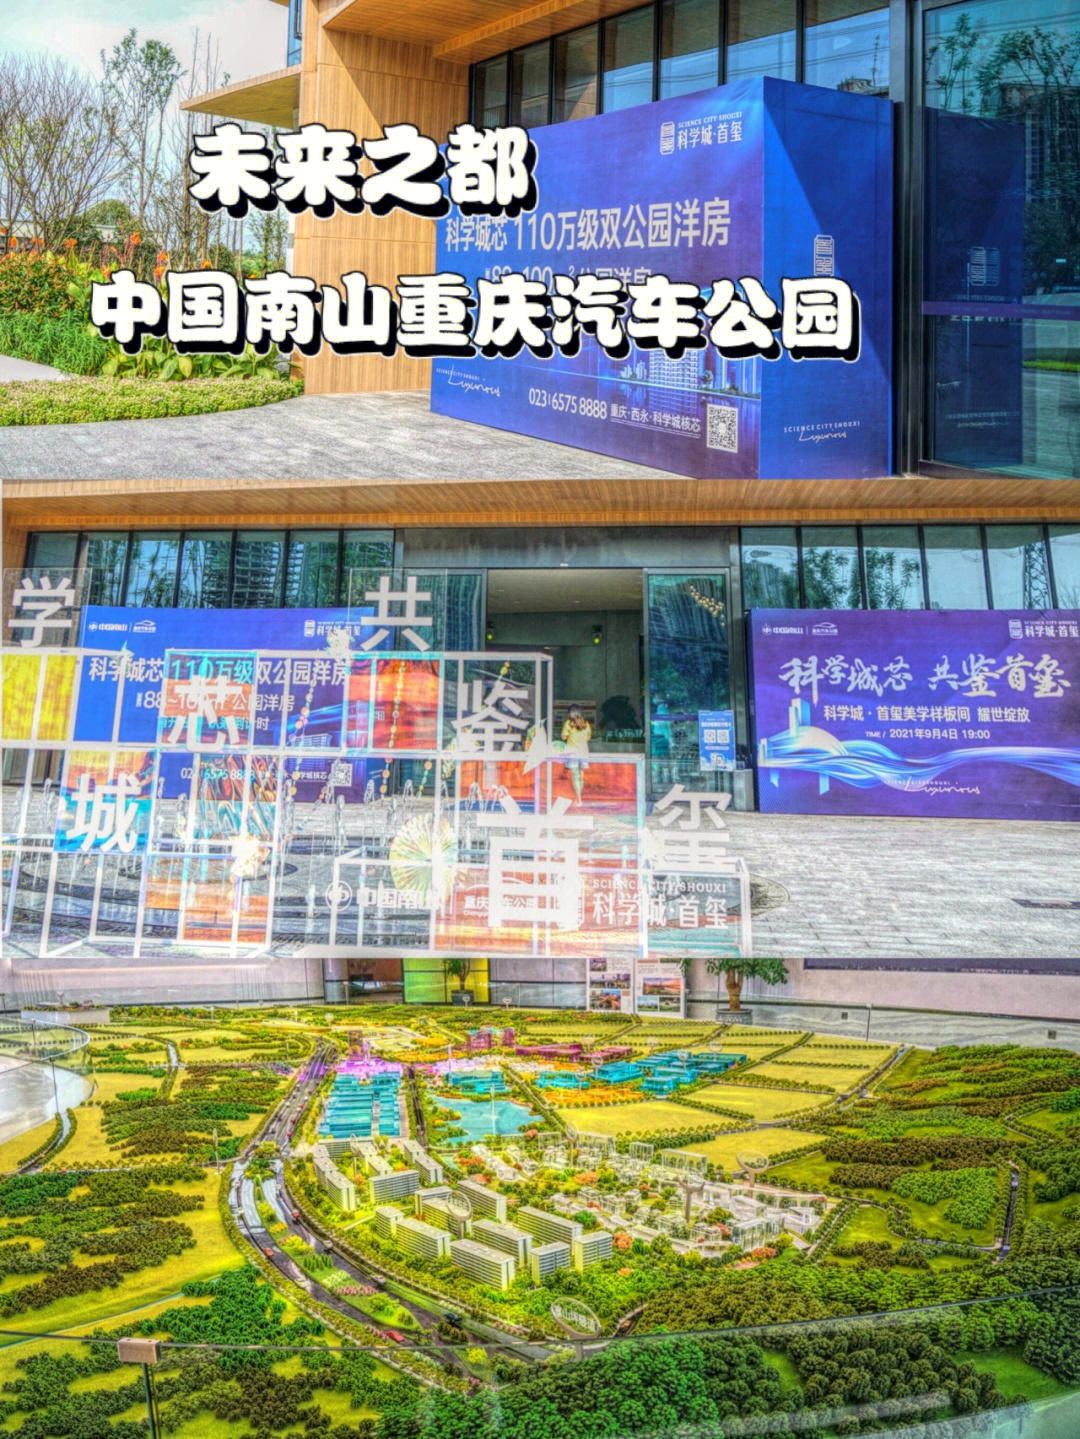 重庆汽车公园项目图片